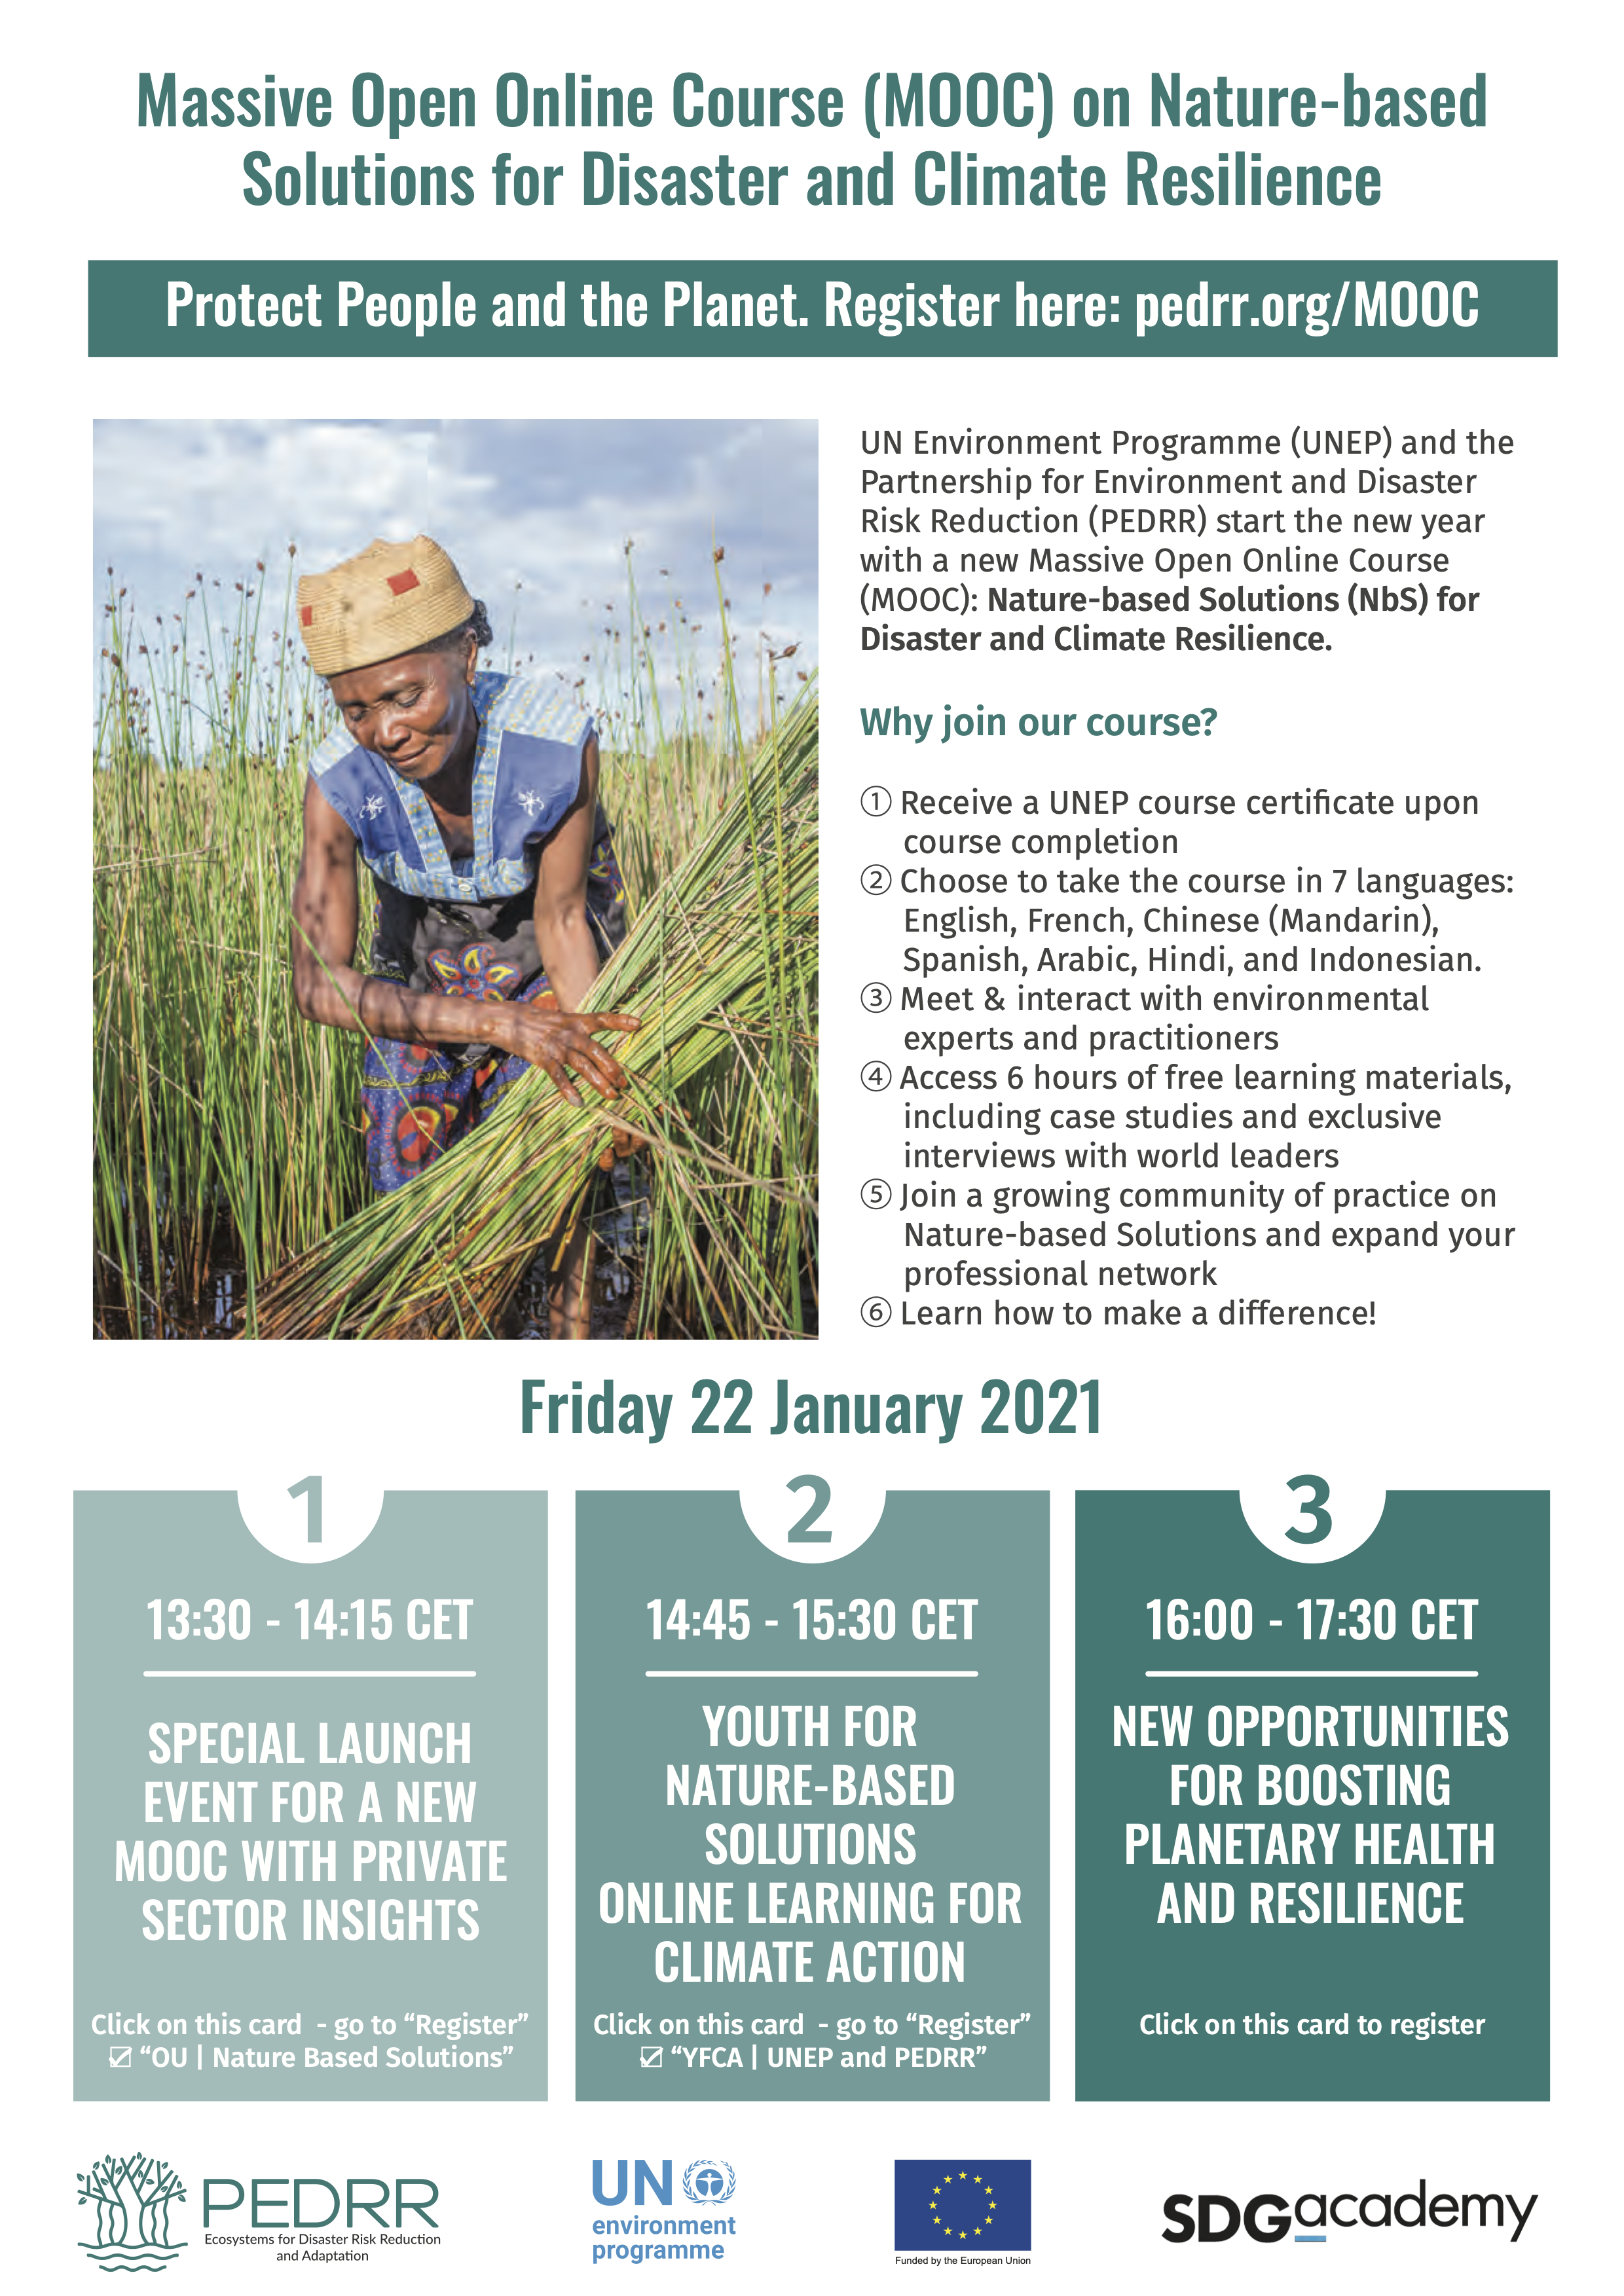 Lancement d'un nouveau MOOC sur les solutions basées sur la nature pour la résilience aux catastrophes et au climat le vendredi 22 janvier